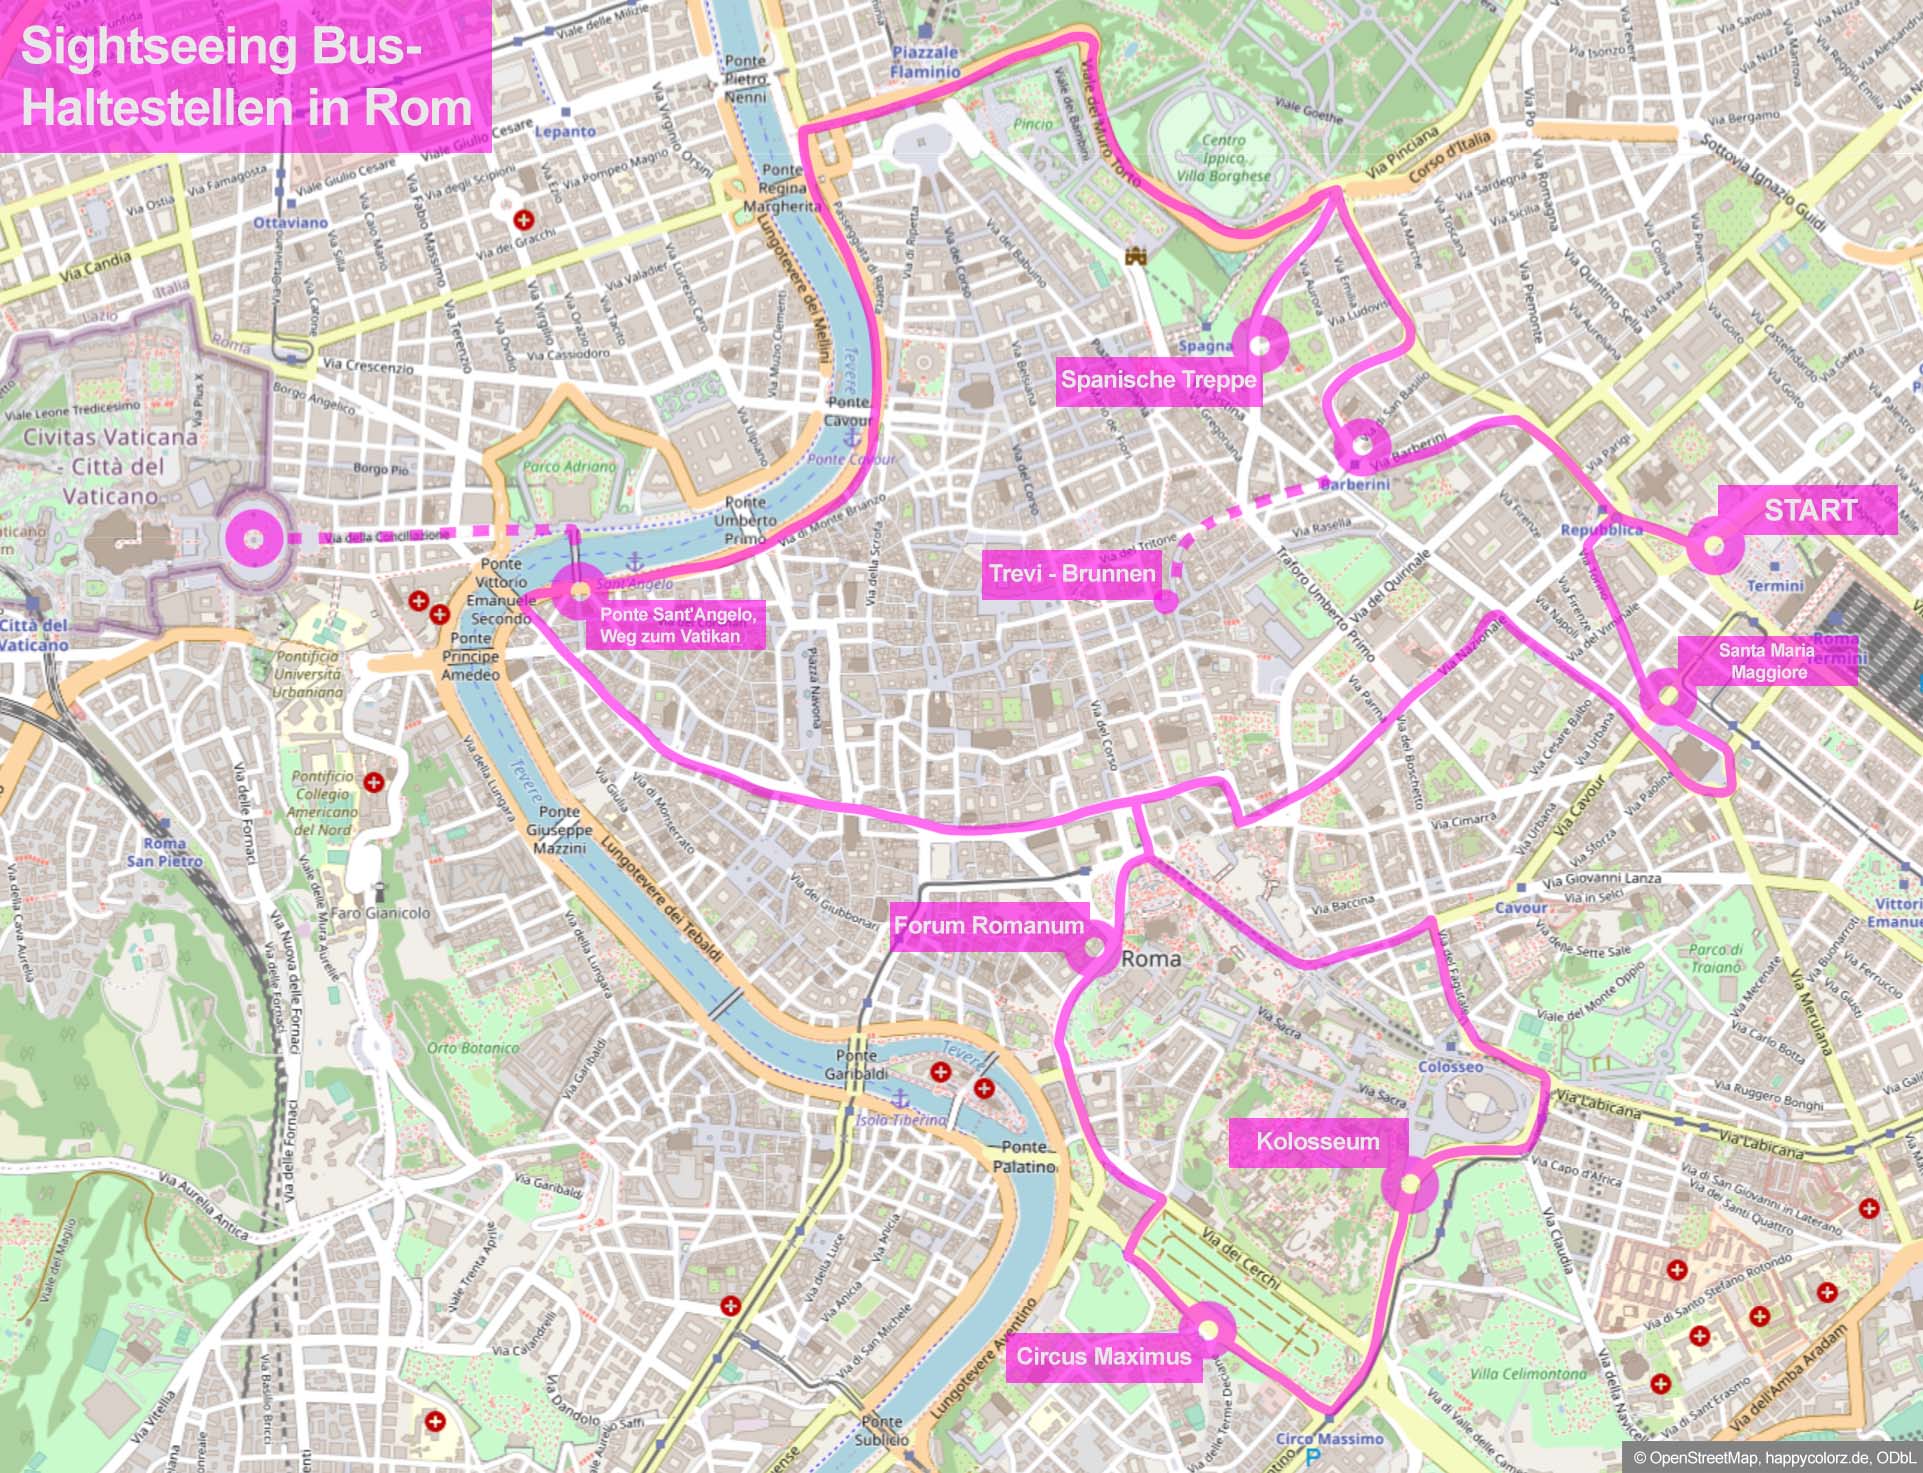 Haltestellen Sightseeing Busse in Rom (mit Karte)